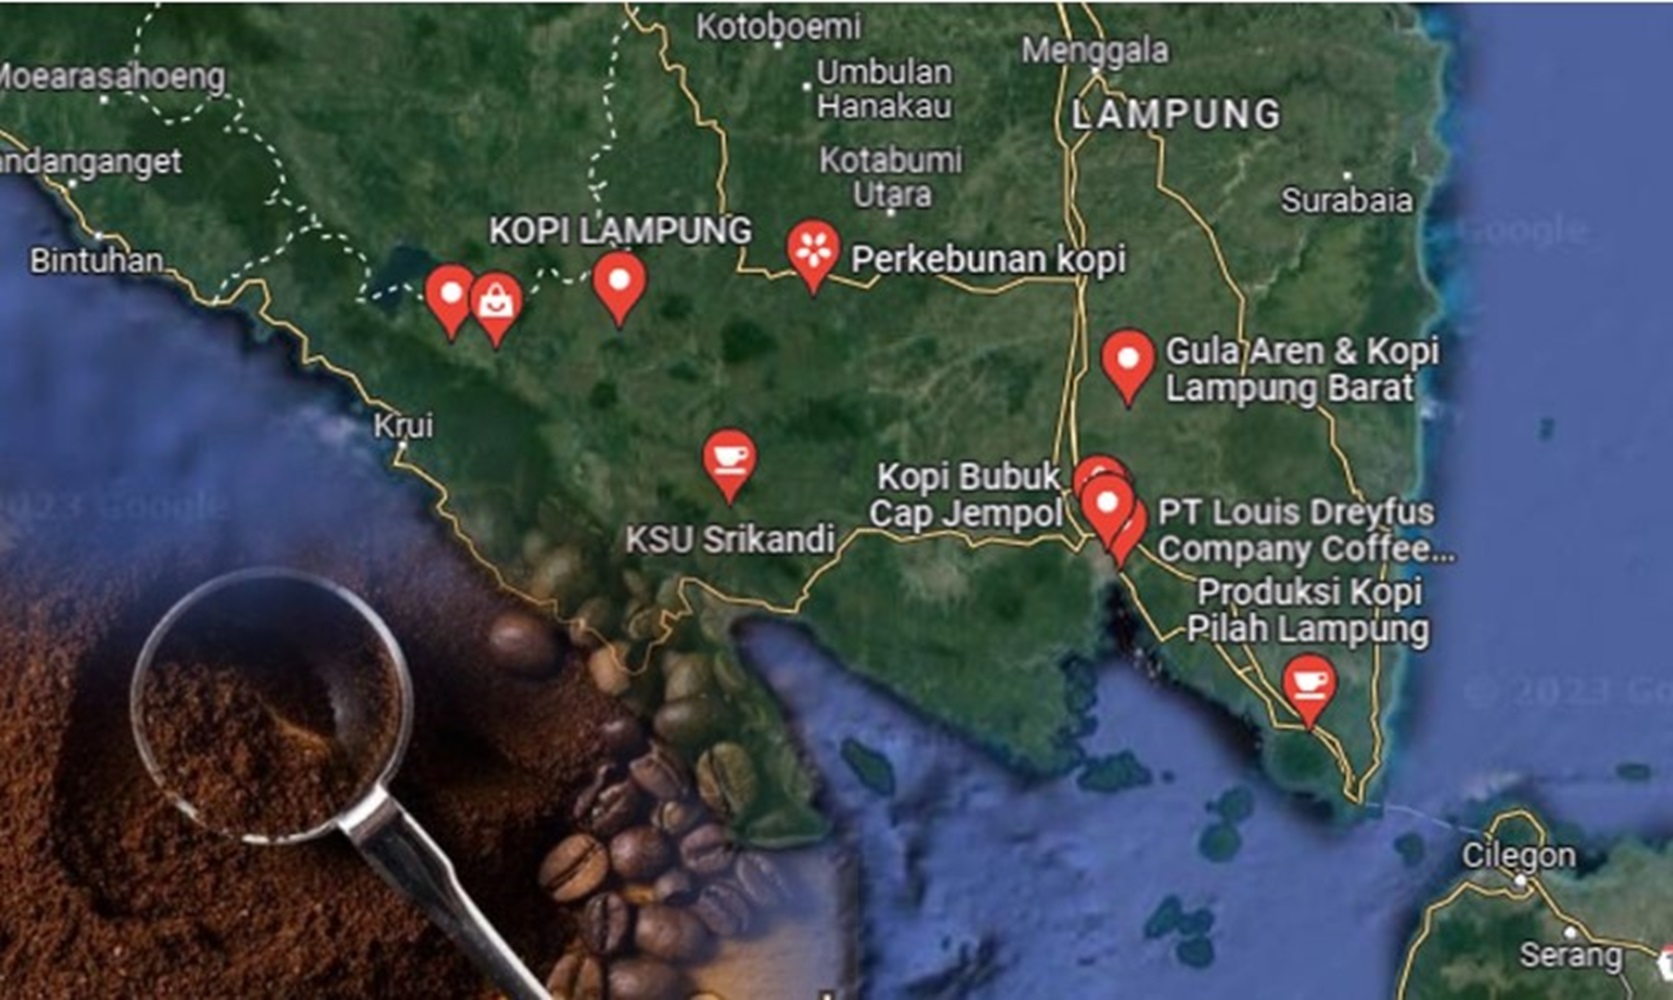 Inilah Daerah Penghasil Kopi Terbaik di Indonesia, Ada Kopi Ijen, Kintamani dan Toraja